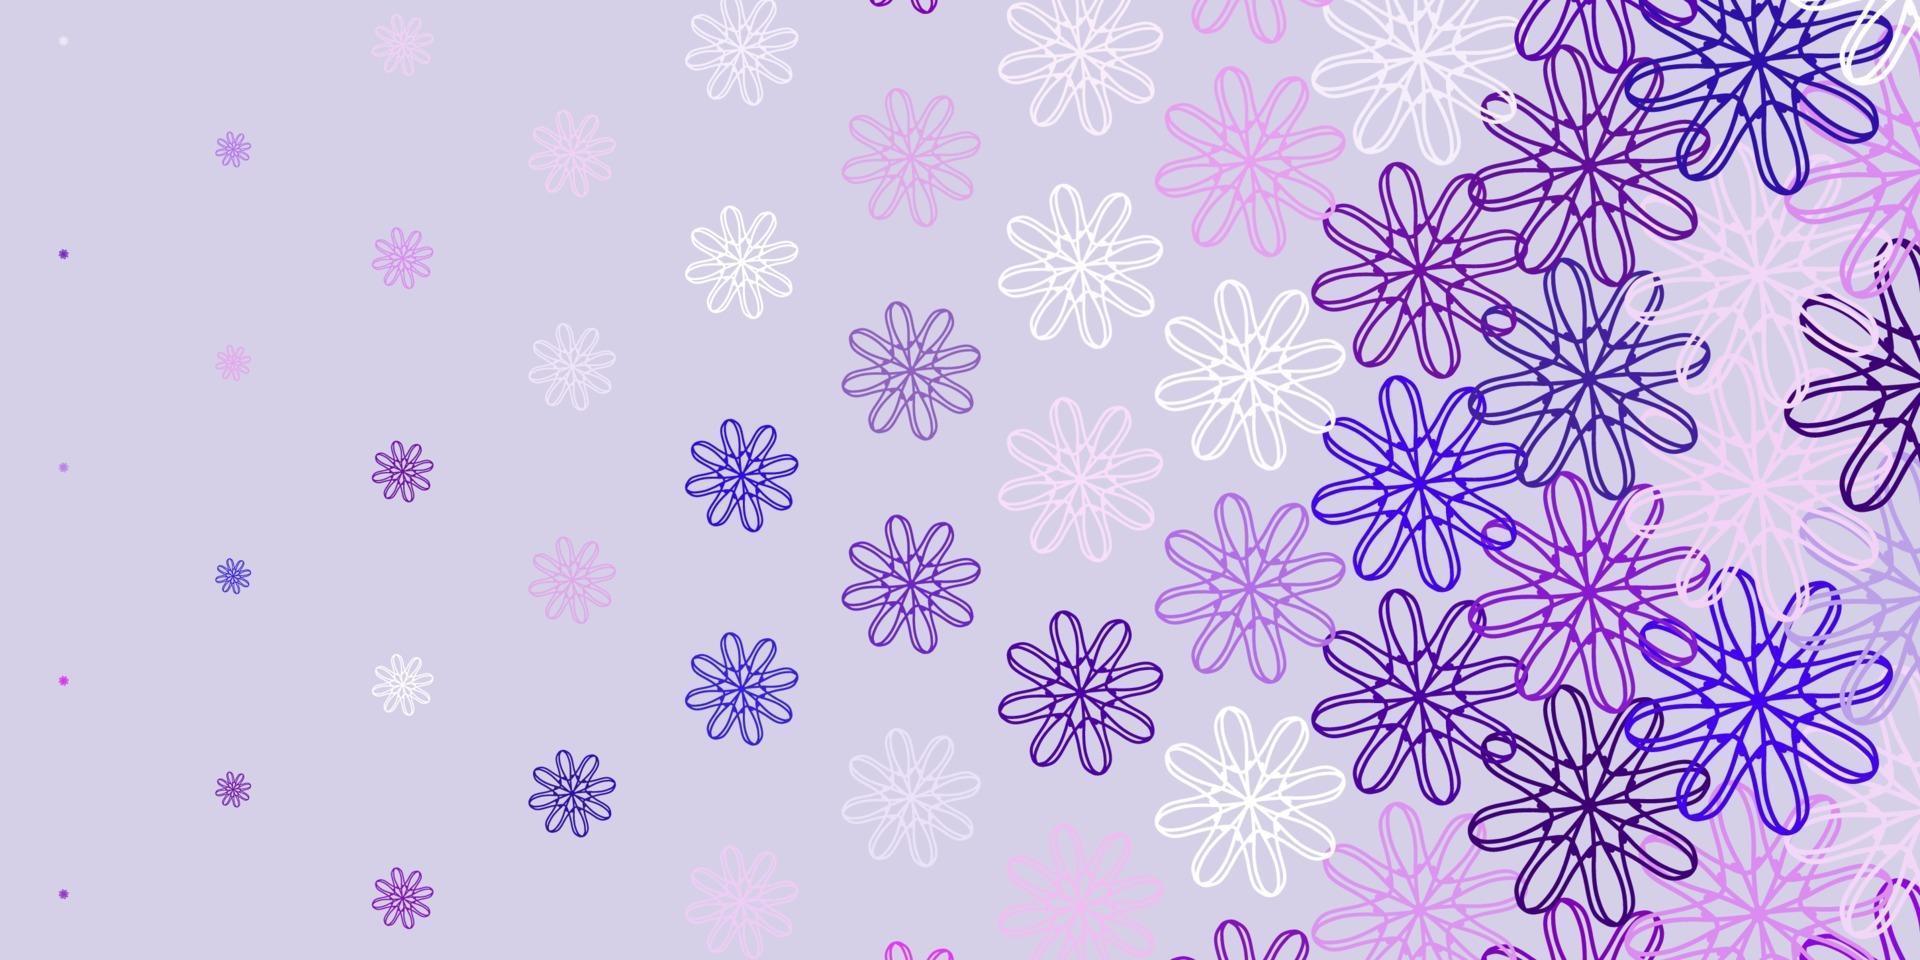 oeuvre naturelle de vecteur violet clair avec des fleurs.